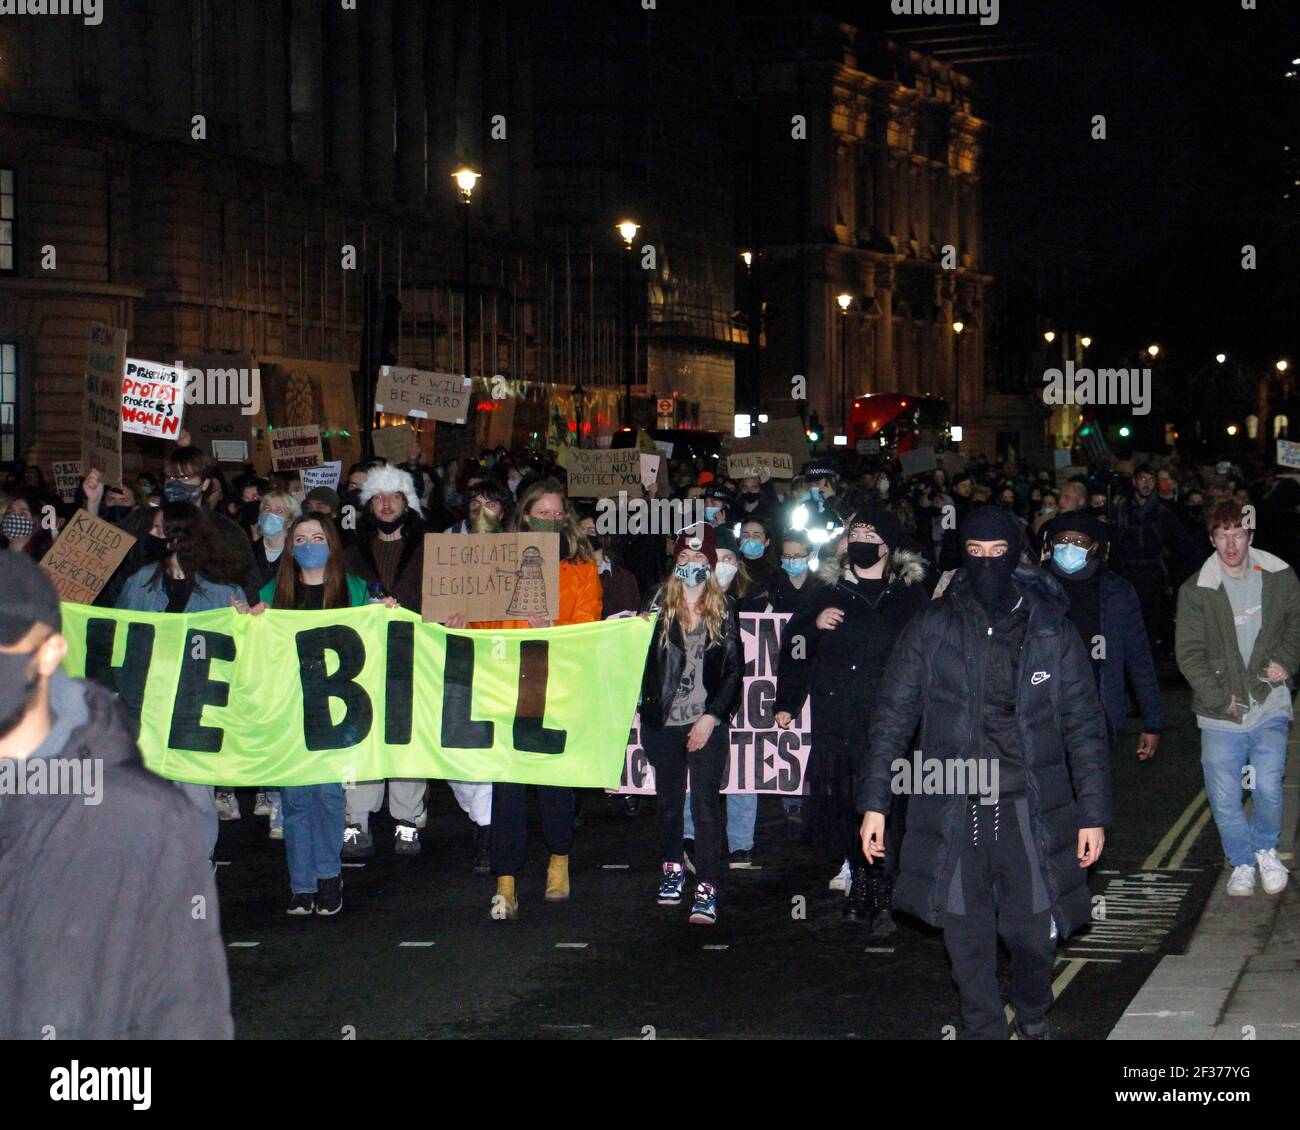 Londres, Royaume-Uni. 15 mars 2021. Les manifestants marchent sur la place Trafalgar pour s'opposer aux nouvelles restrictions du droit de protestation. Londres. 15 mars 2021. Credit: One Up Top Editorial Images/Alamy Live News Banque D'Images